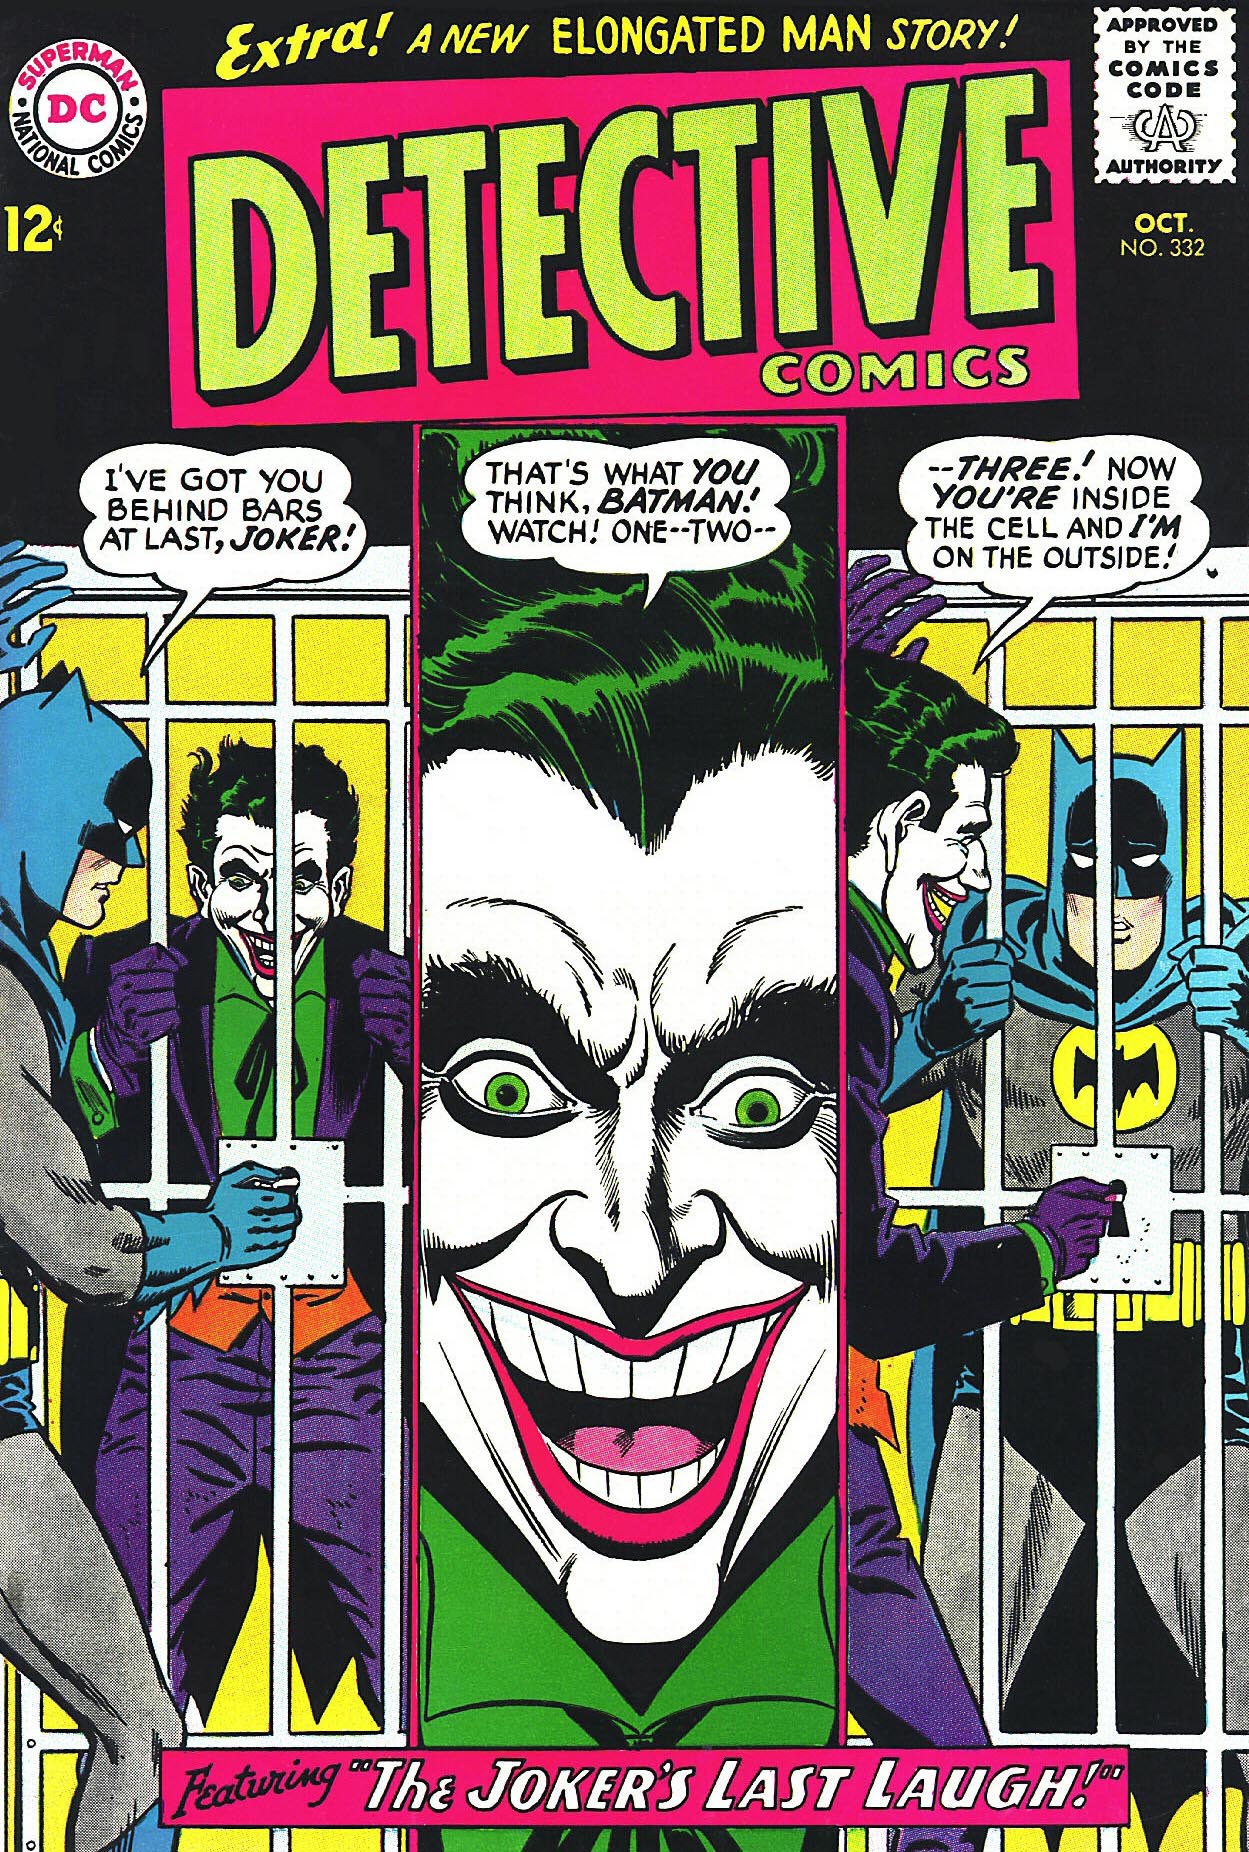 Detective Comics Vol 1 332 | DC Database | Fandom